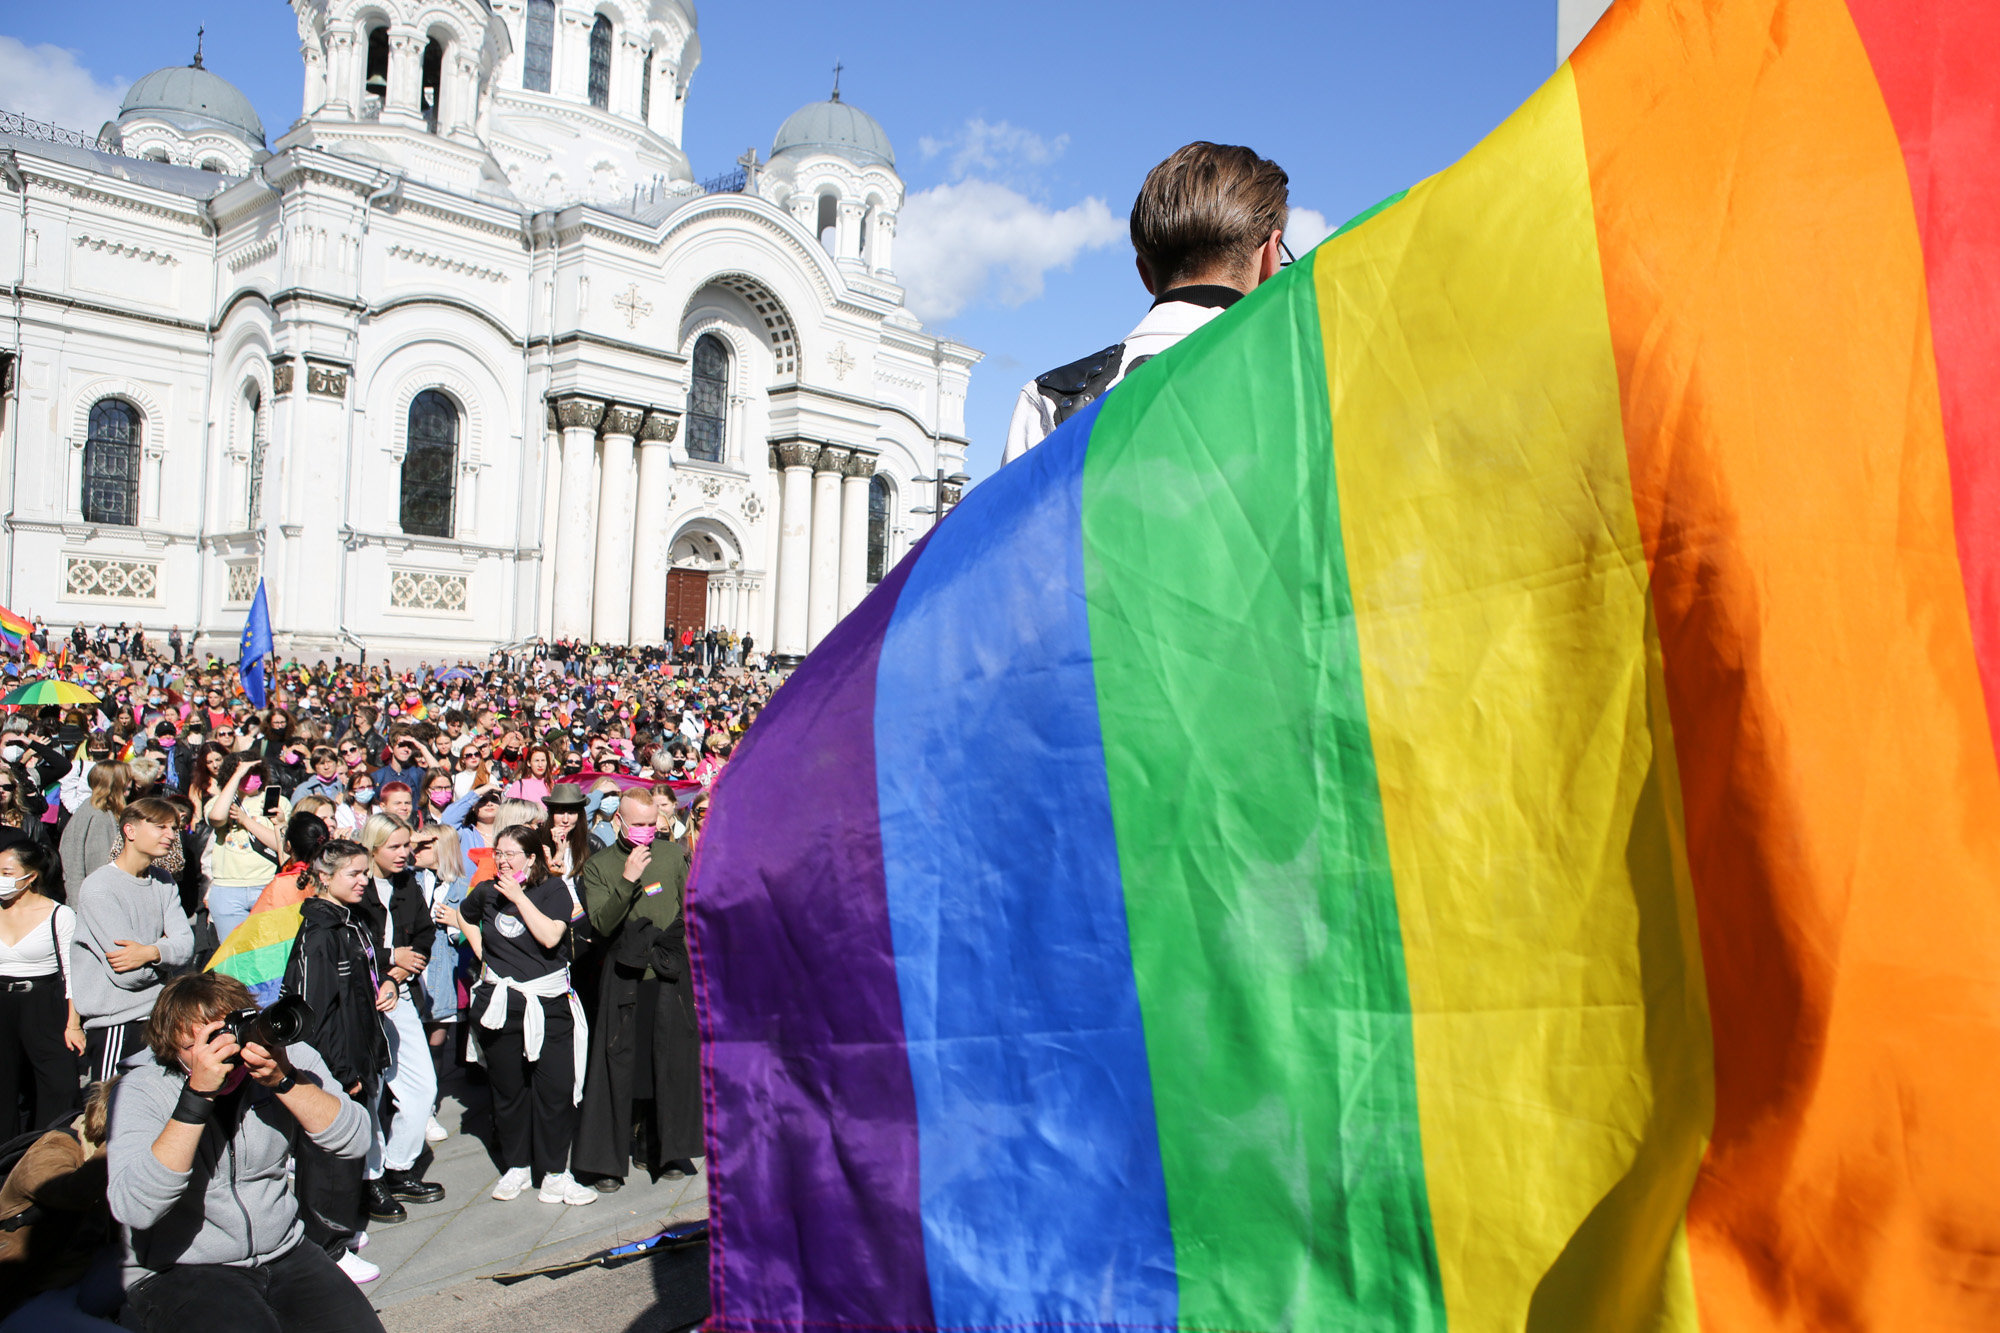 Kaunas Pride